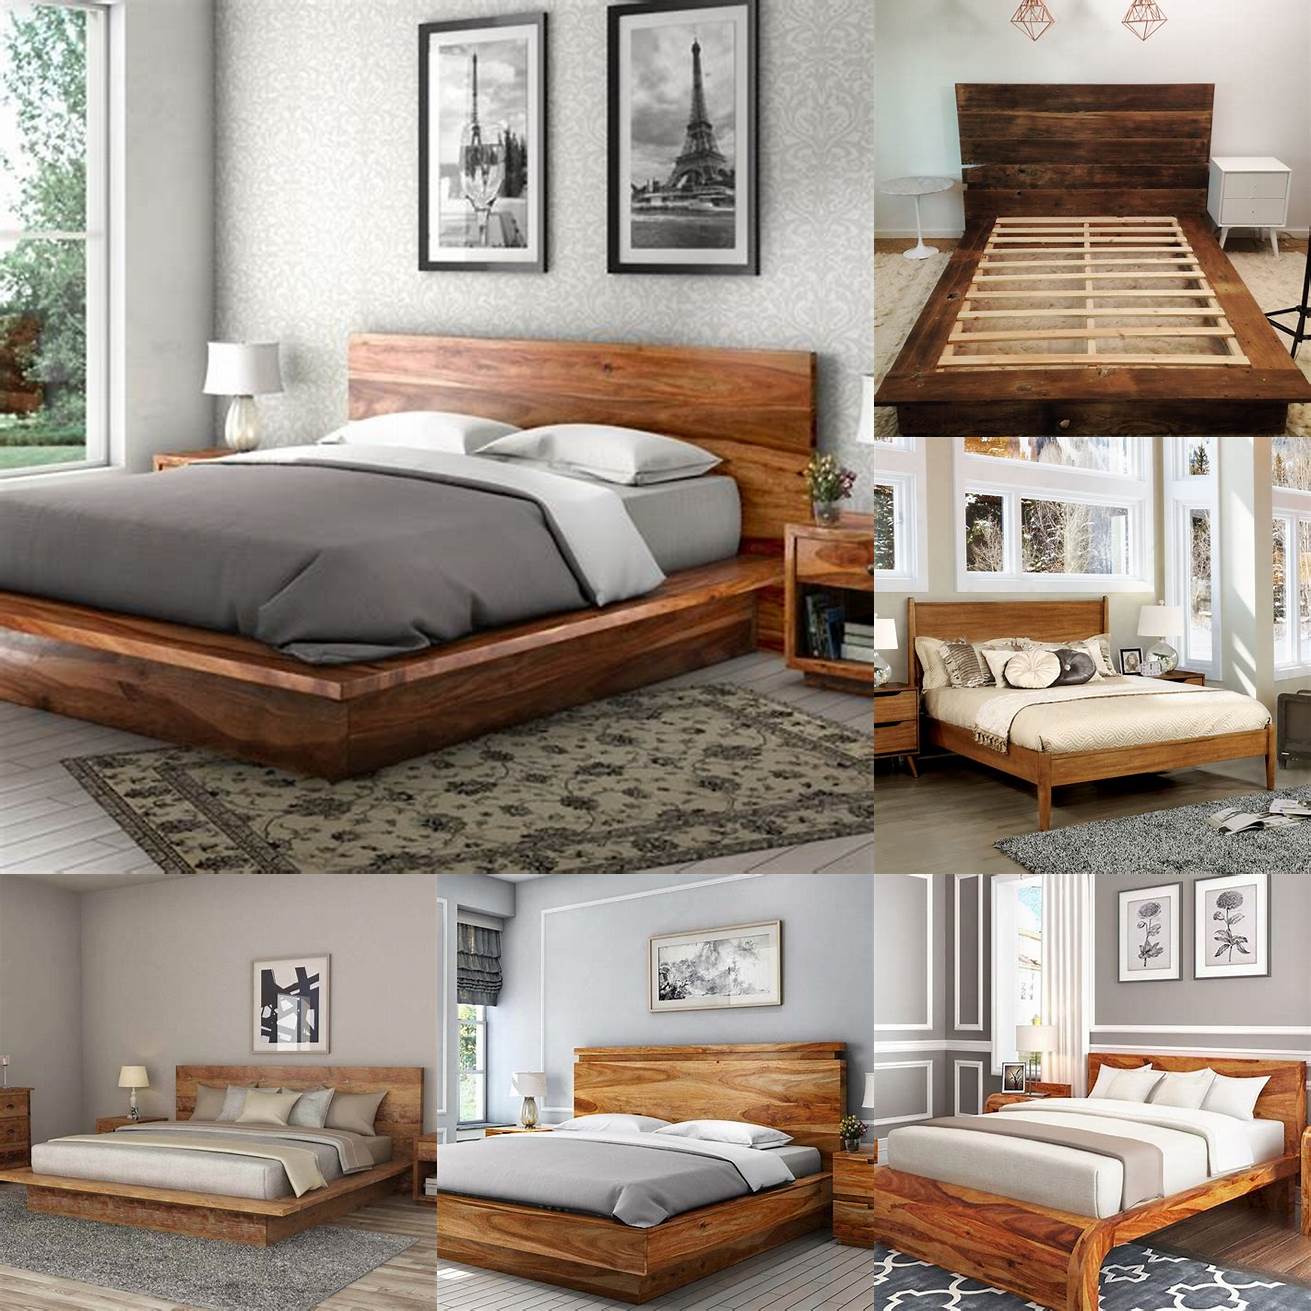 Wooden Bed Platforms